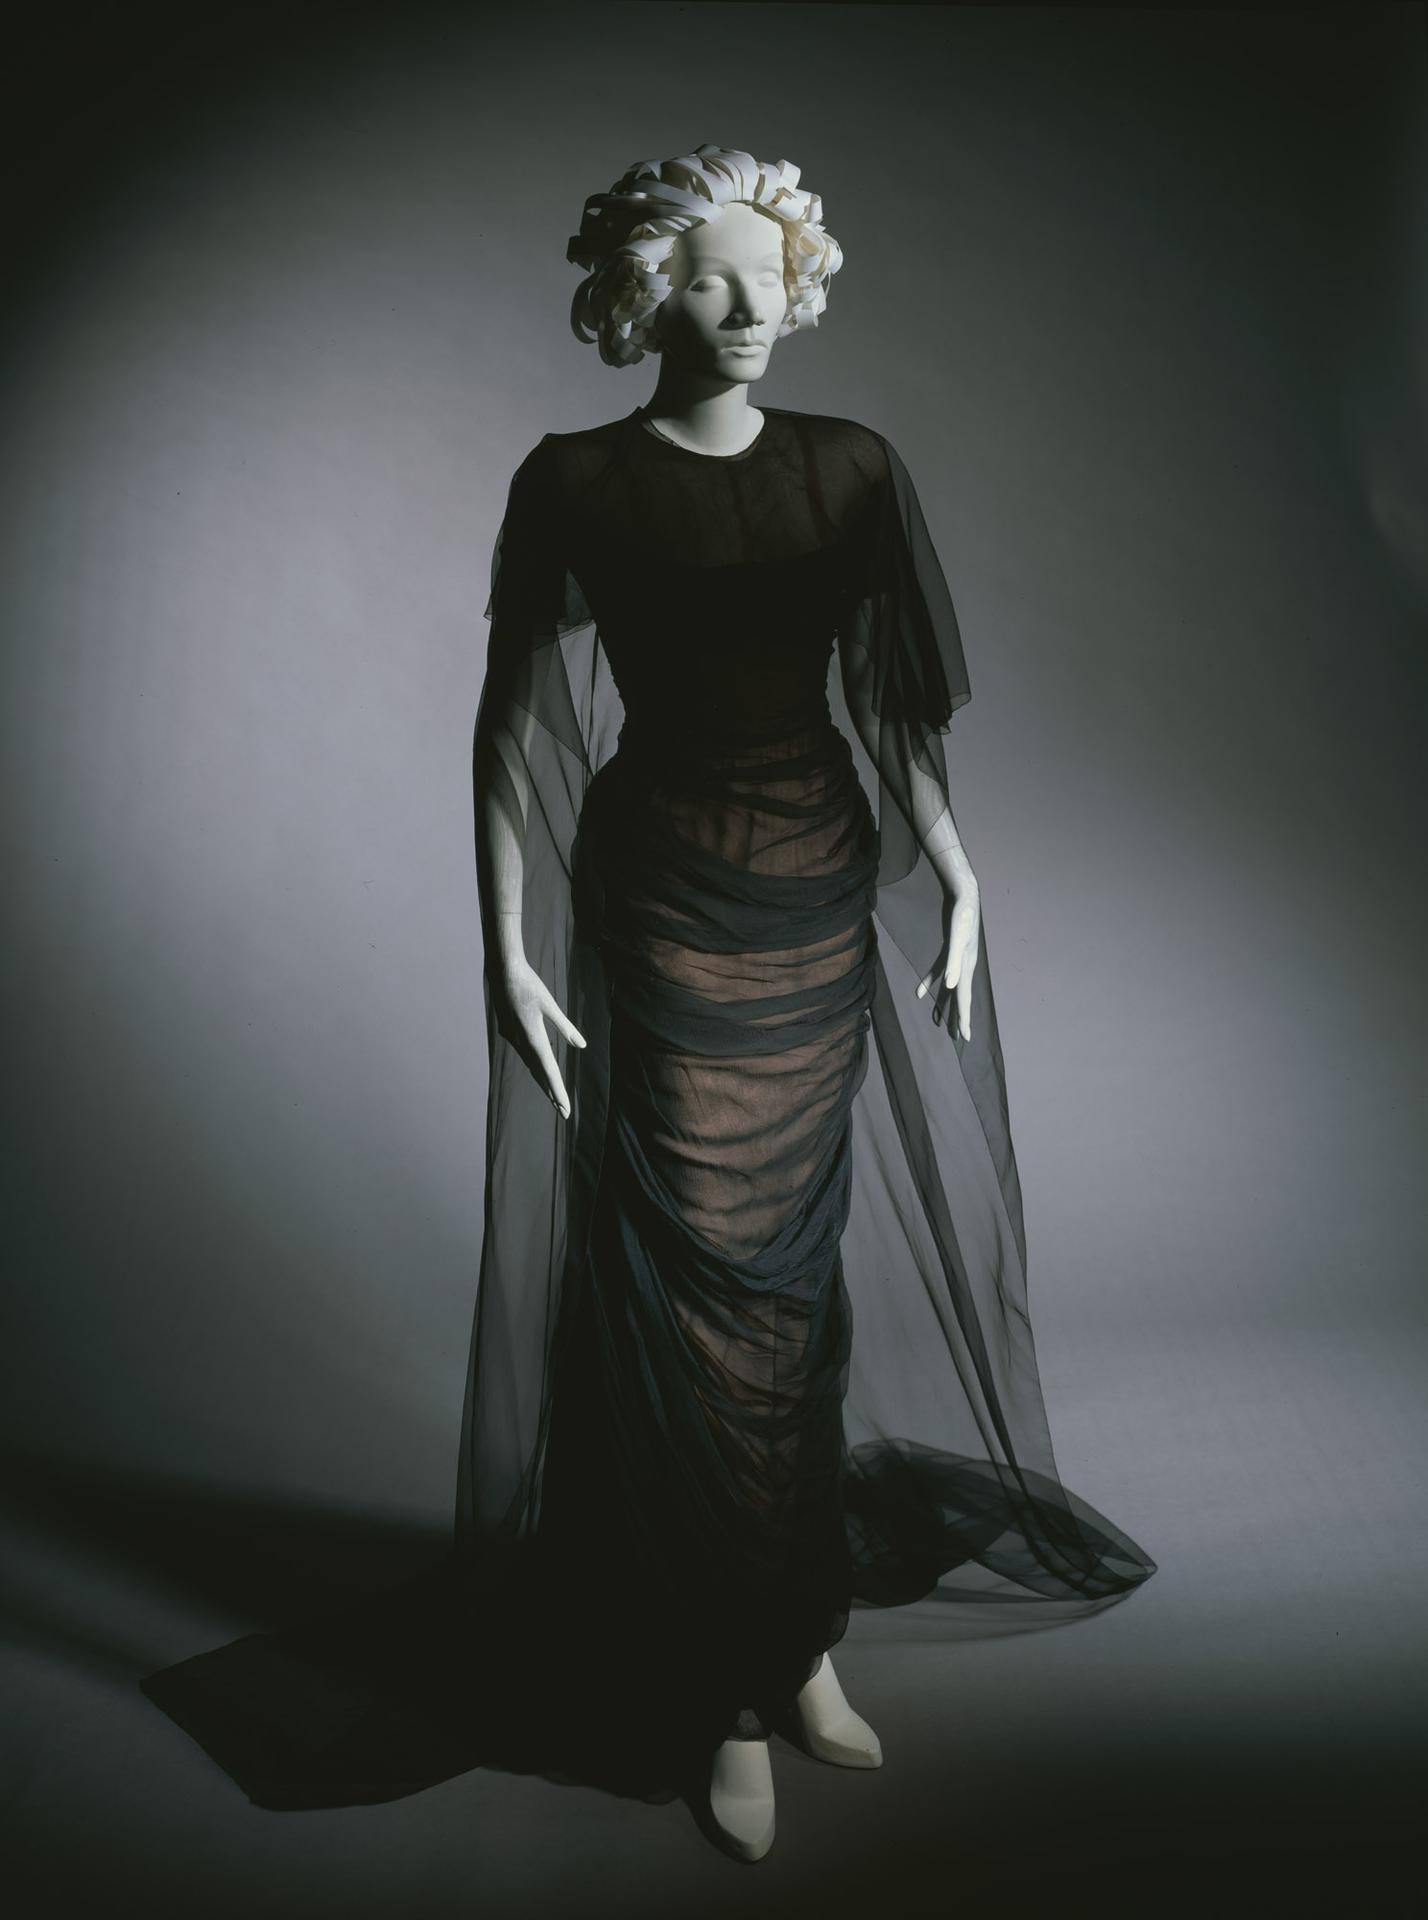 Collection | Details Marlene Dietrich Berlin Kinemathek Deutsche